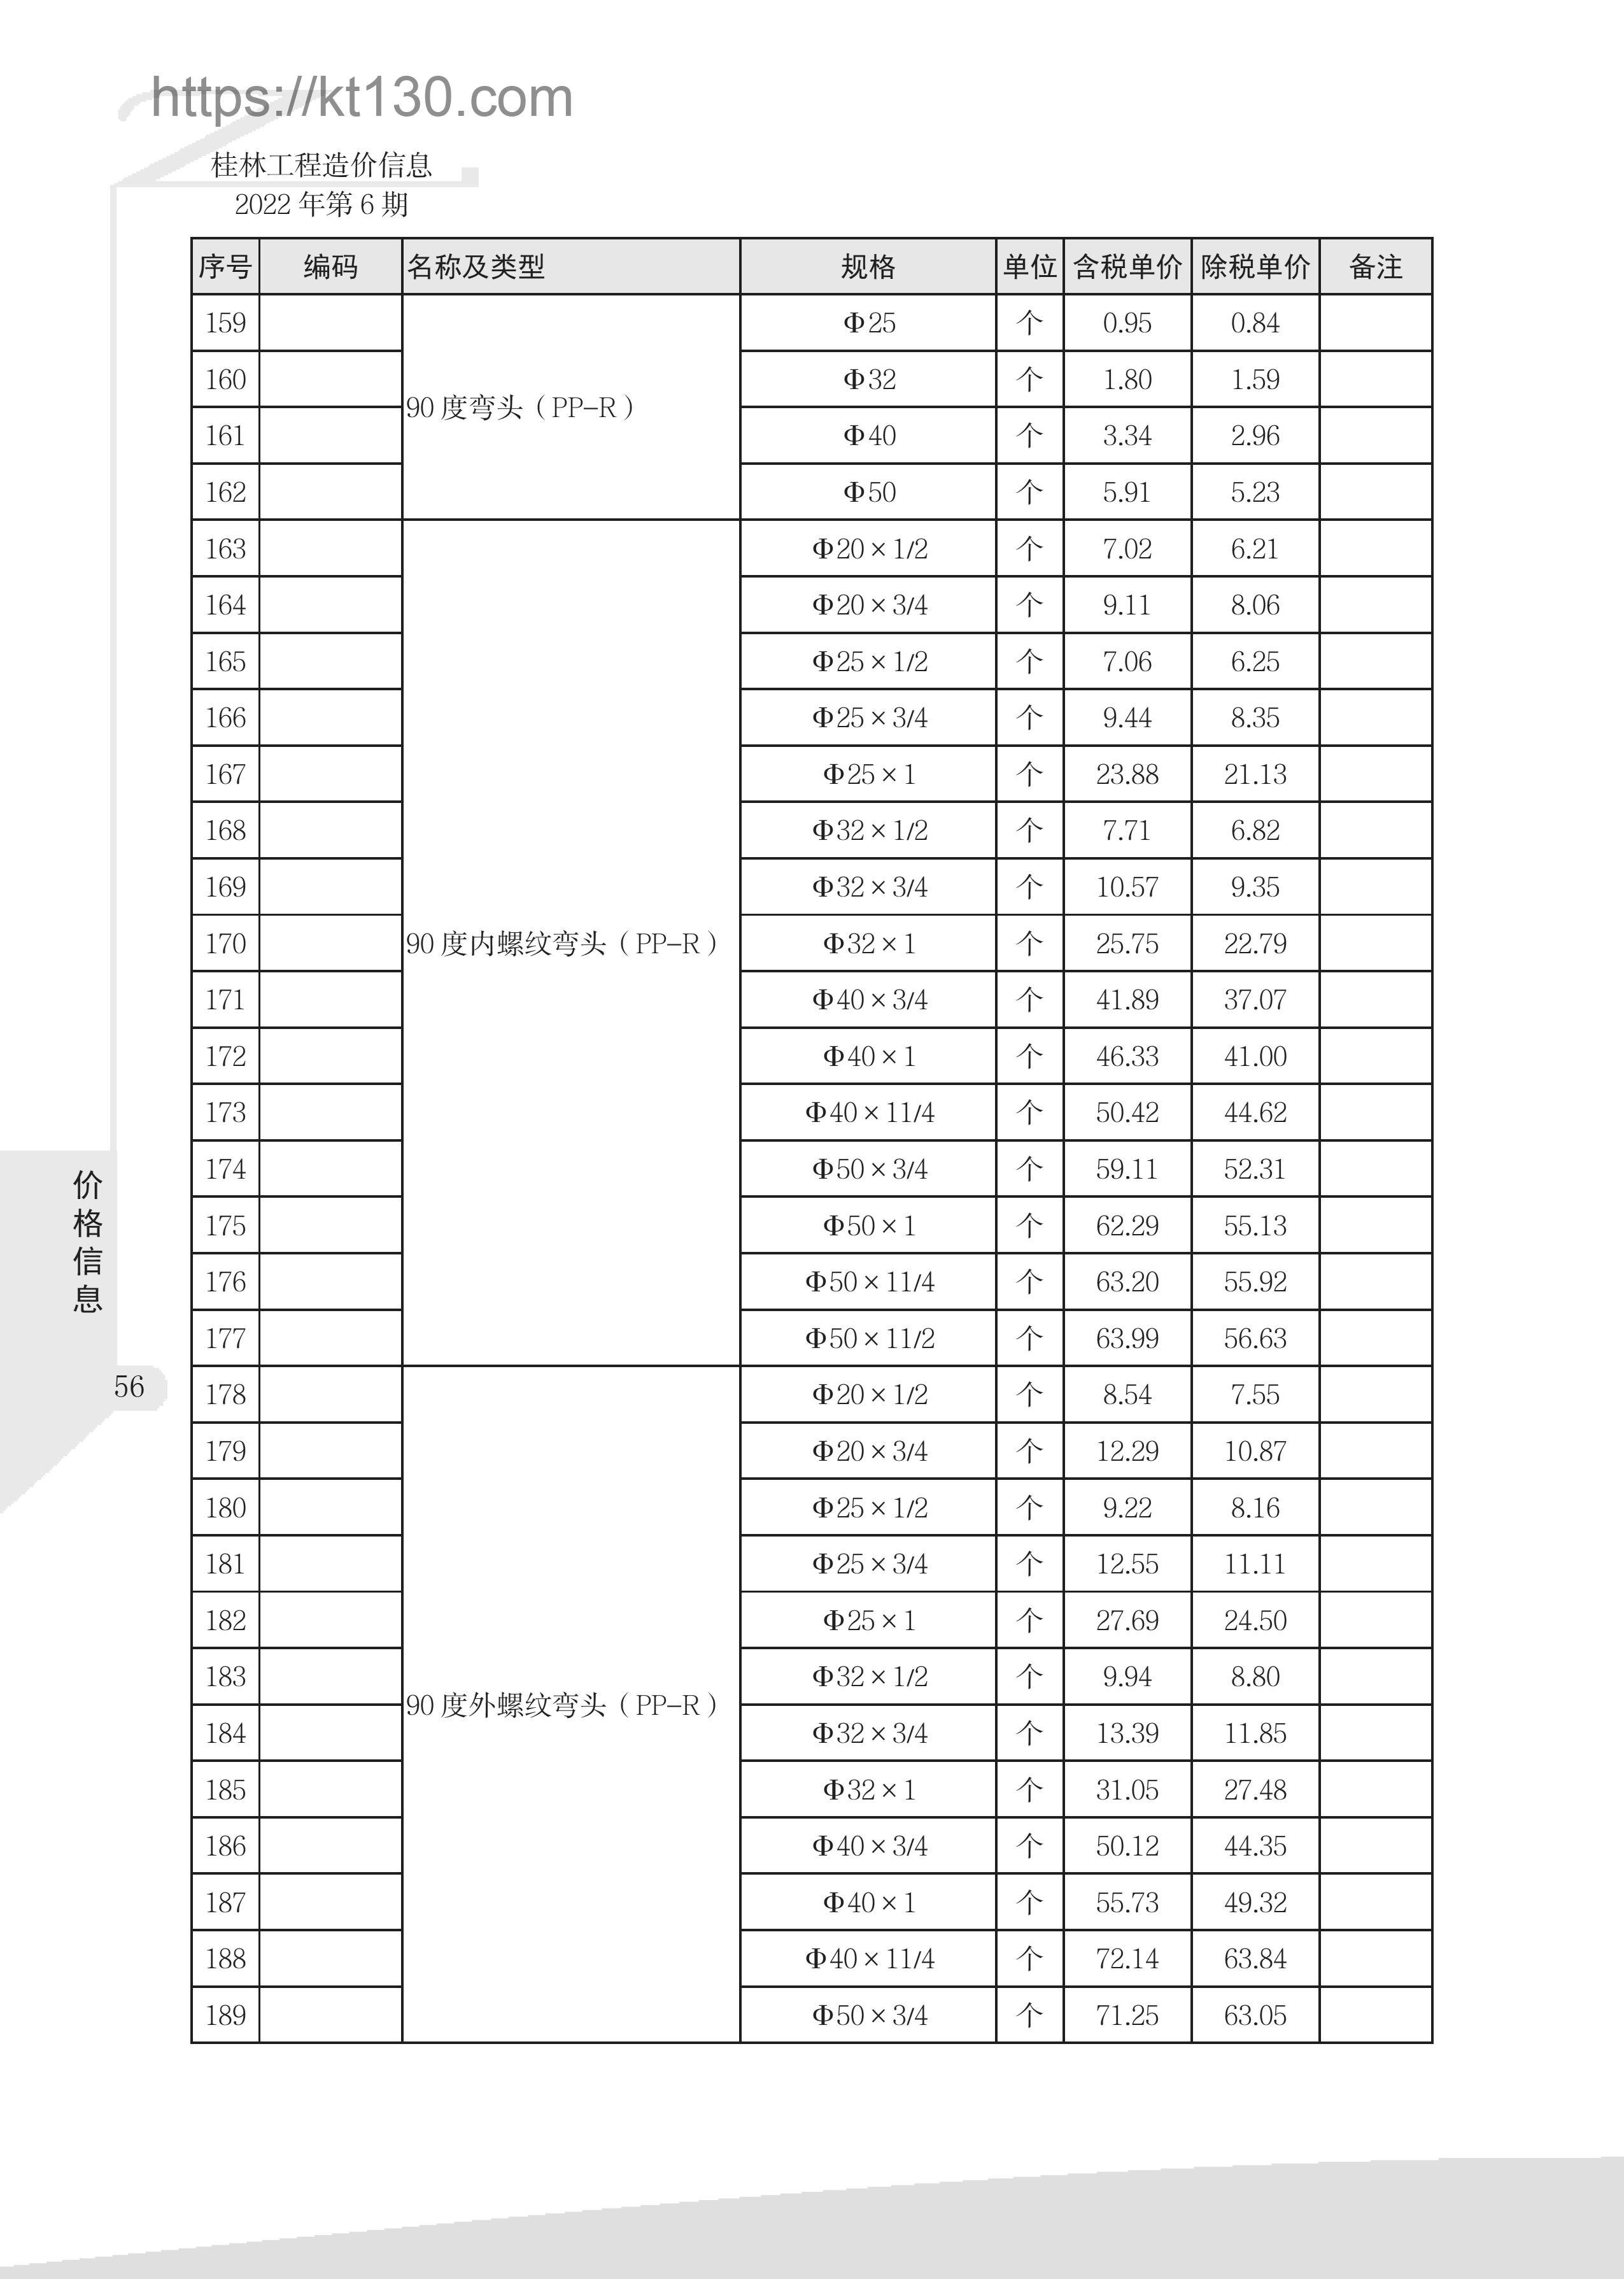 桂林市2022年6月建筑材料价_弯头及三通_51932